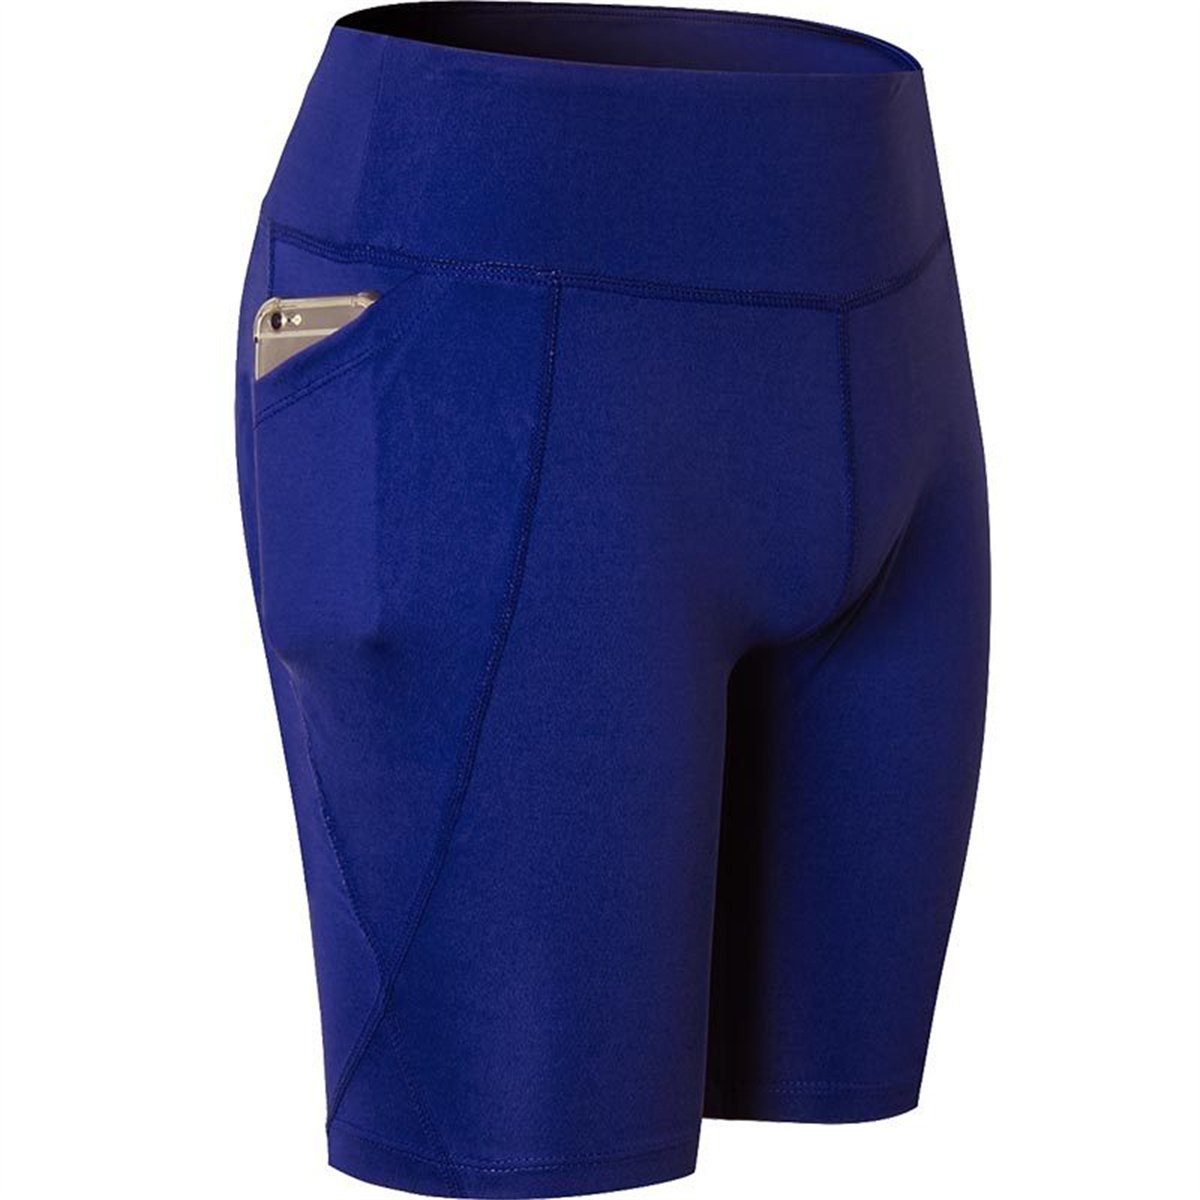 Seamless selected carefully Blau Damen trocknende Shorts Sport-Yogahose schnell für Hochelastische,